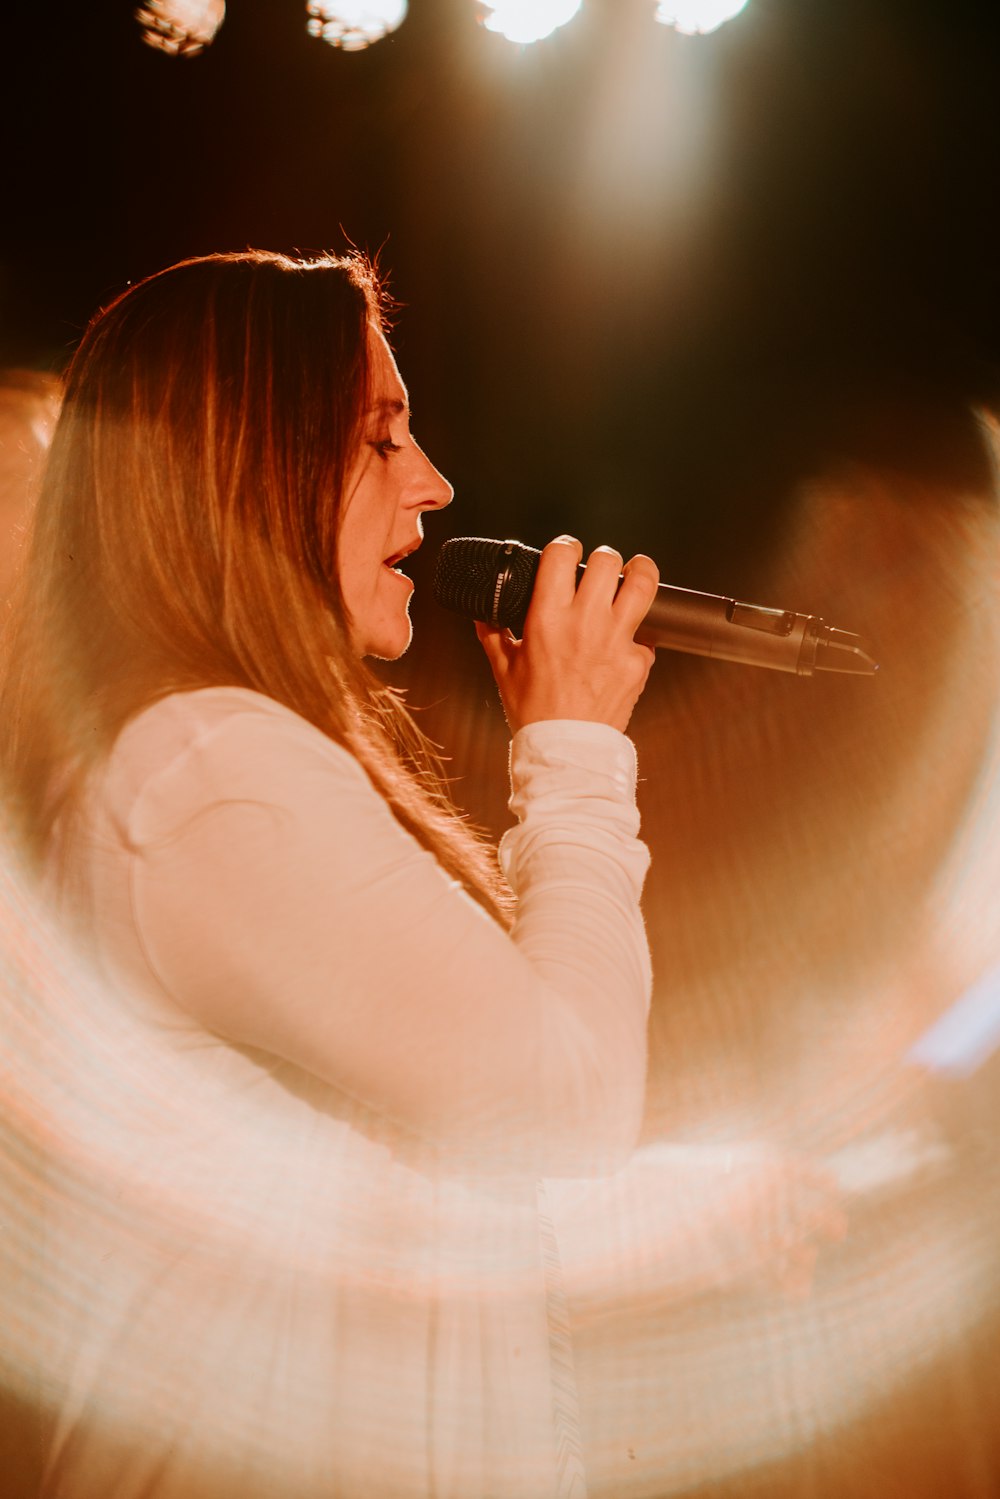 Frau hält Mikrofon in der Hand, während sie auf der Bühne singt